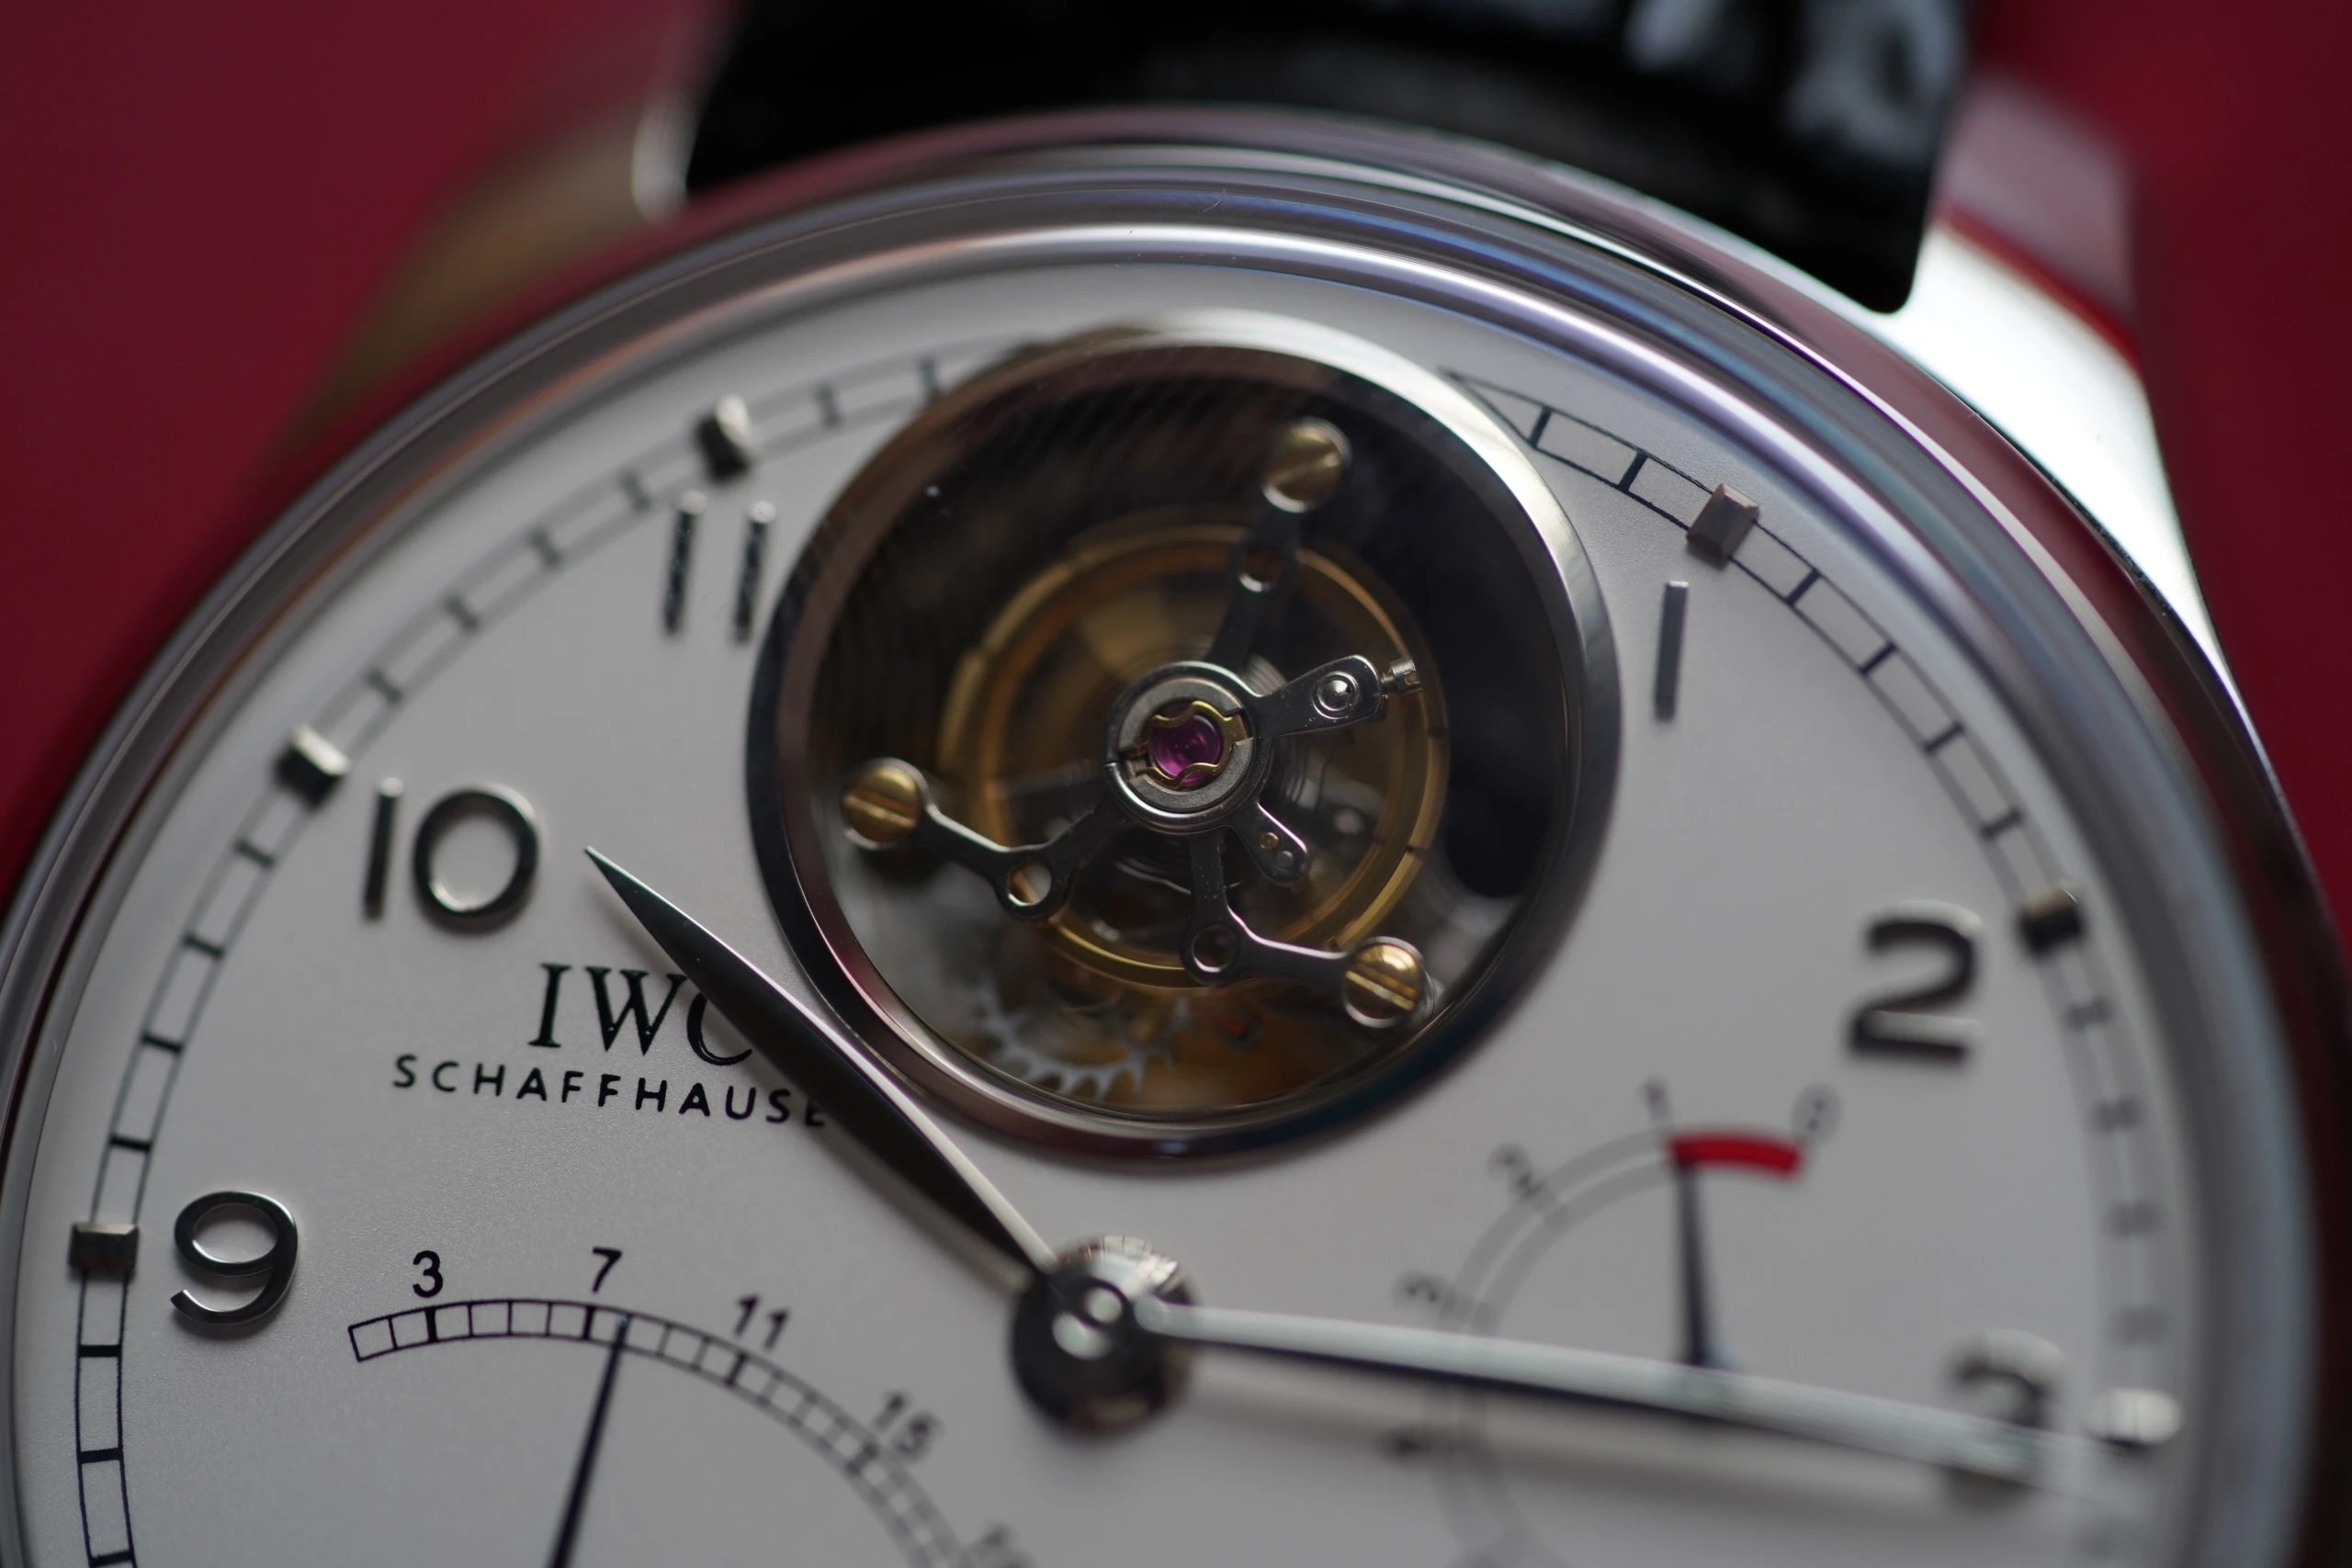 陀飞轮万国IW504601。目前品质最接近正品的陀飞轮男士机械手表。葡萄牙陀飞轮逆返系列